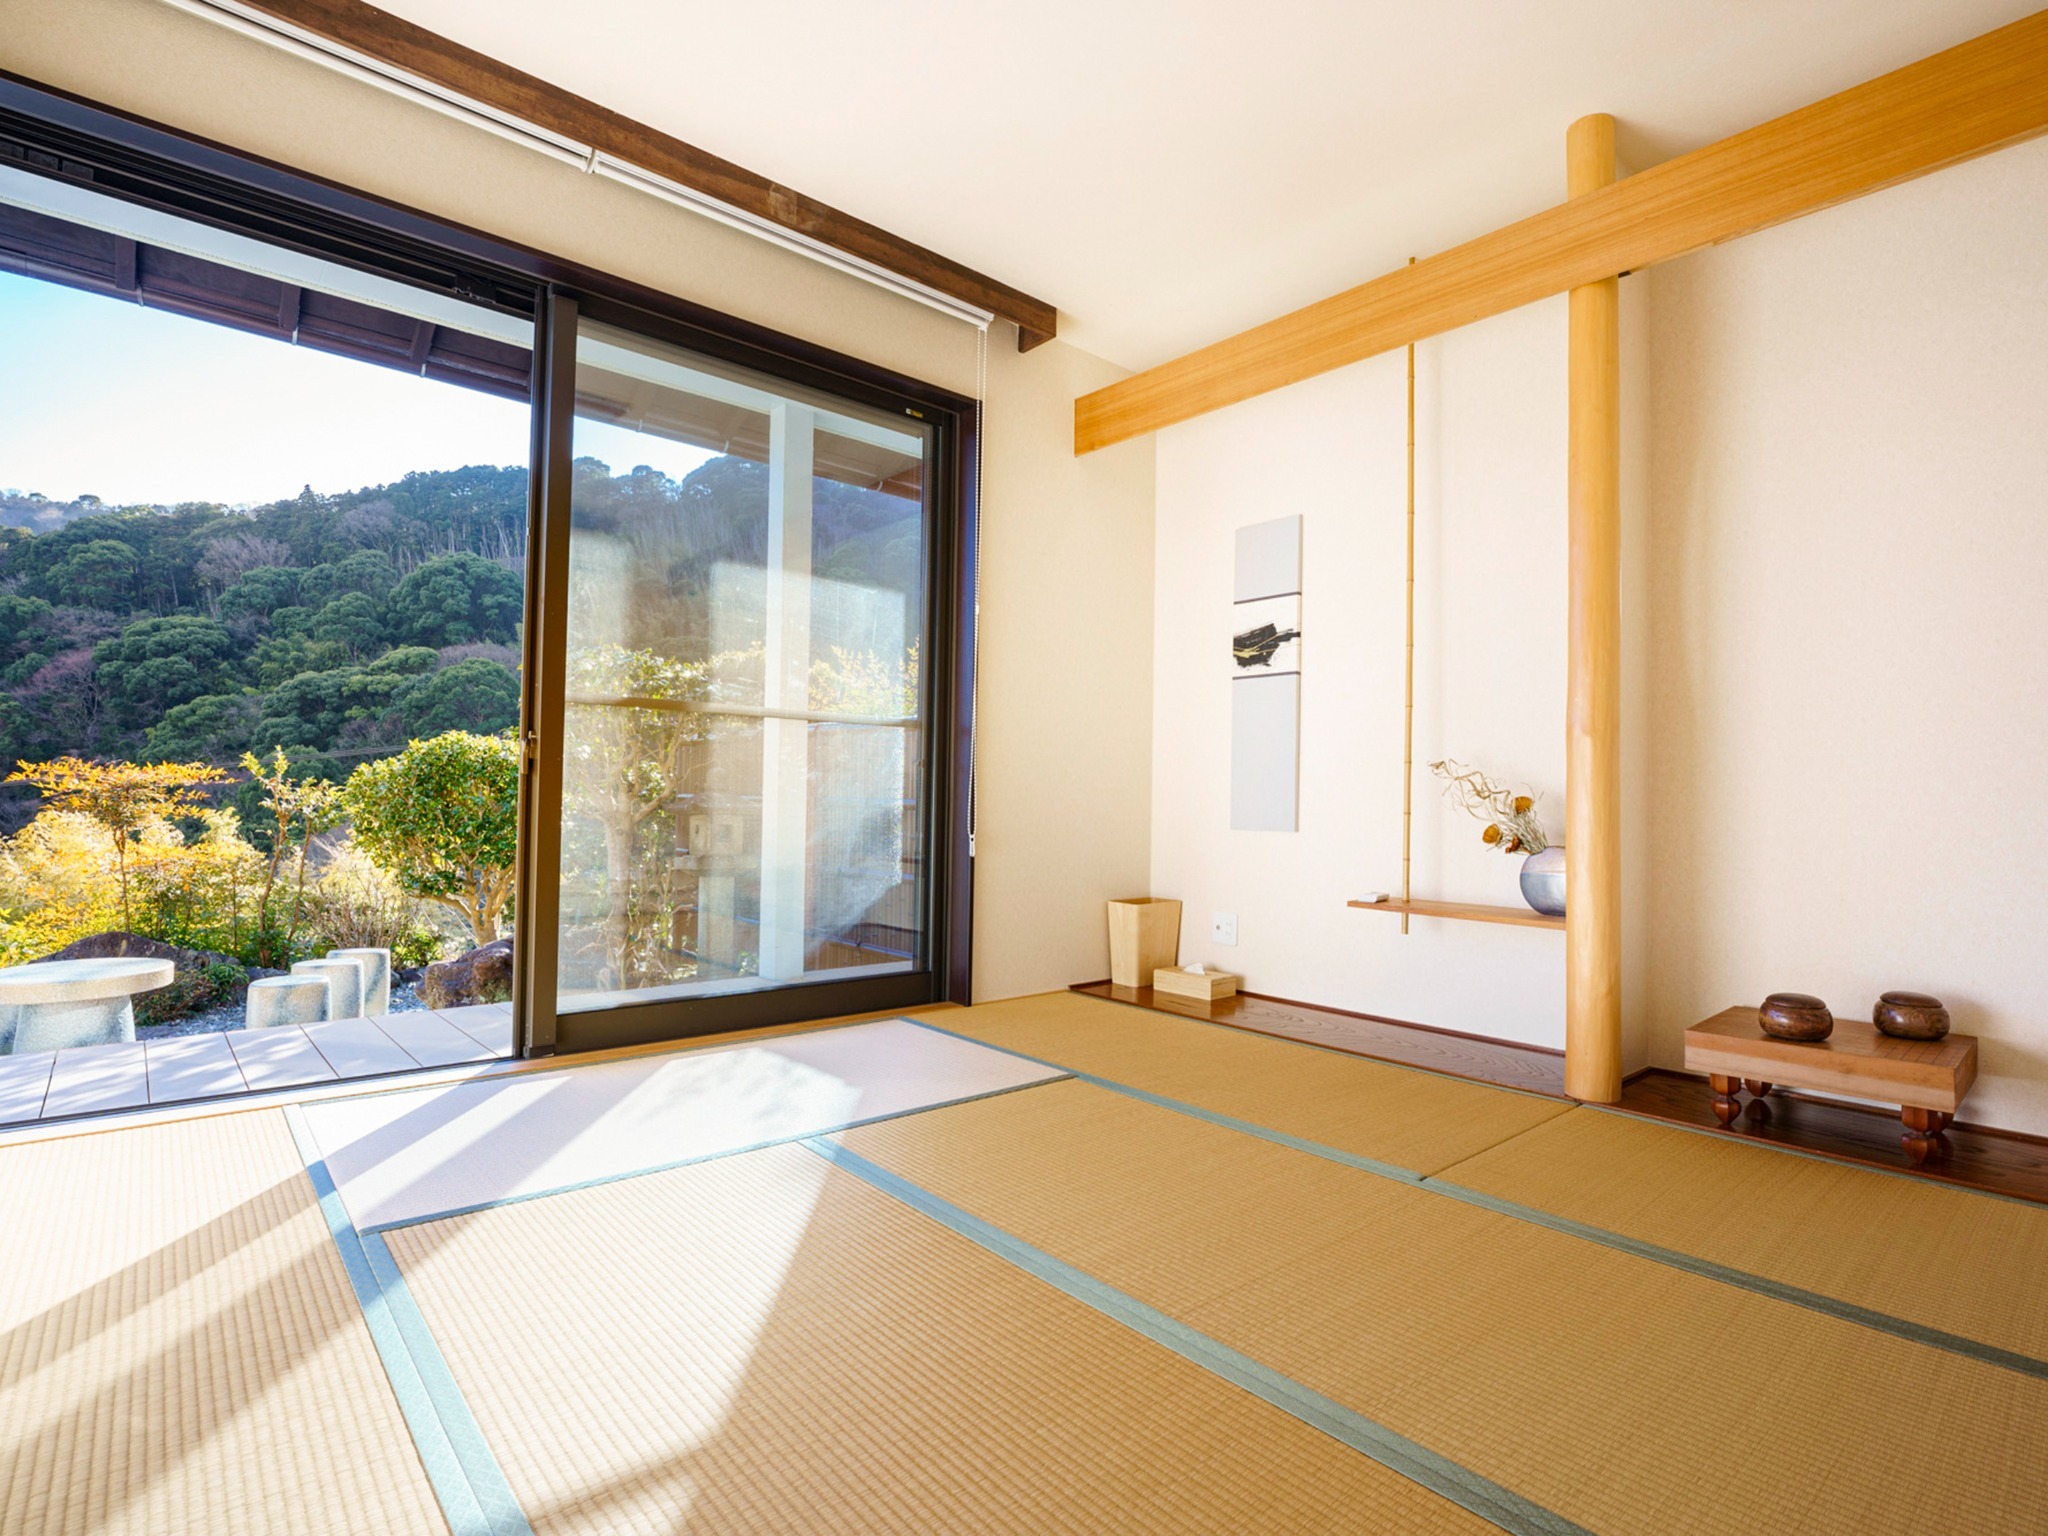 ・【和室】日本庭園の眺めを楽しむのにぴったり。3名様までお布団を敷いてお休み頂ける和室です